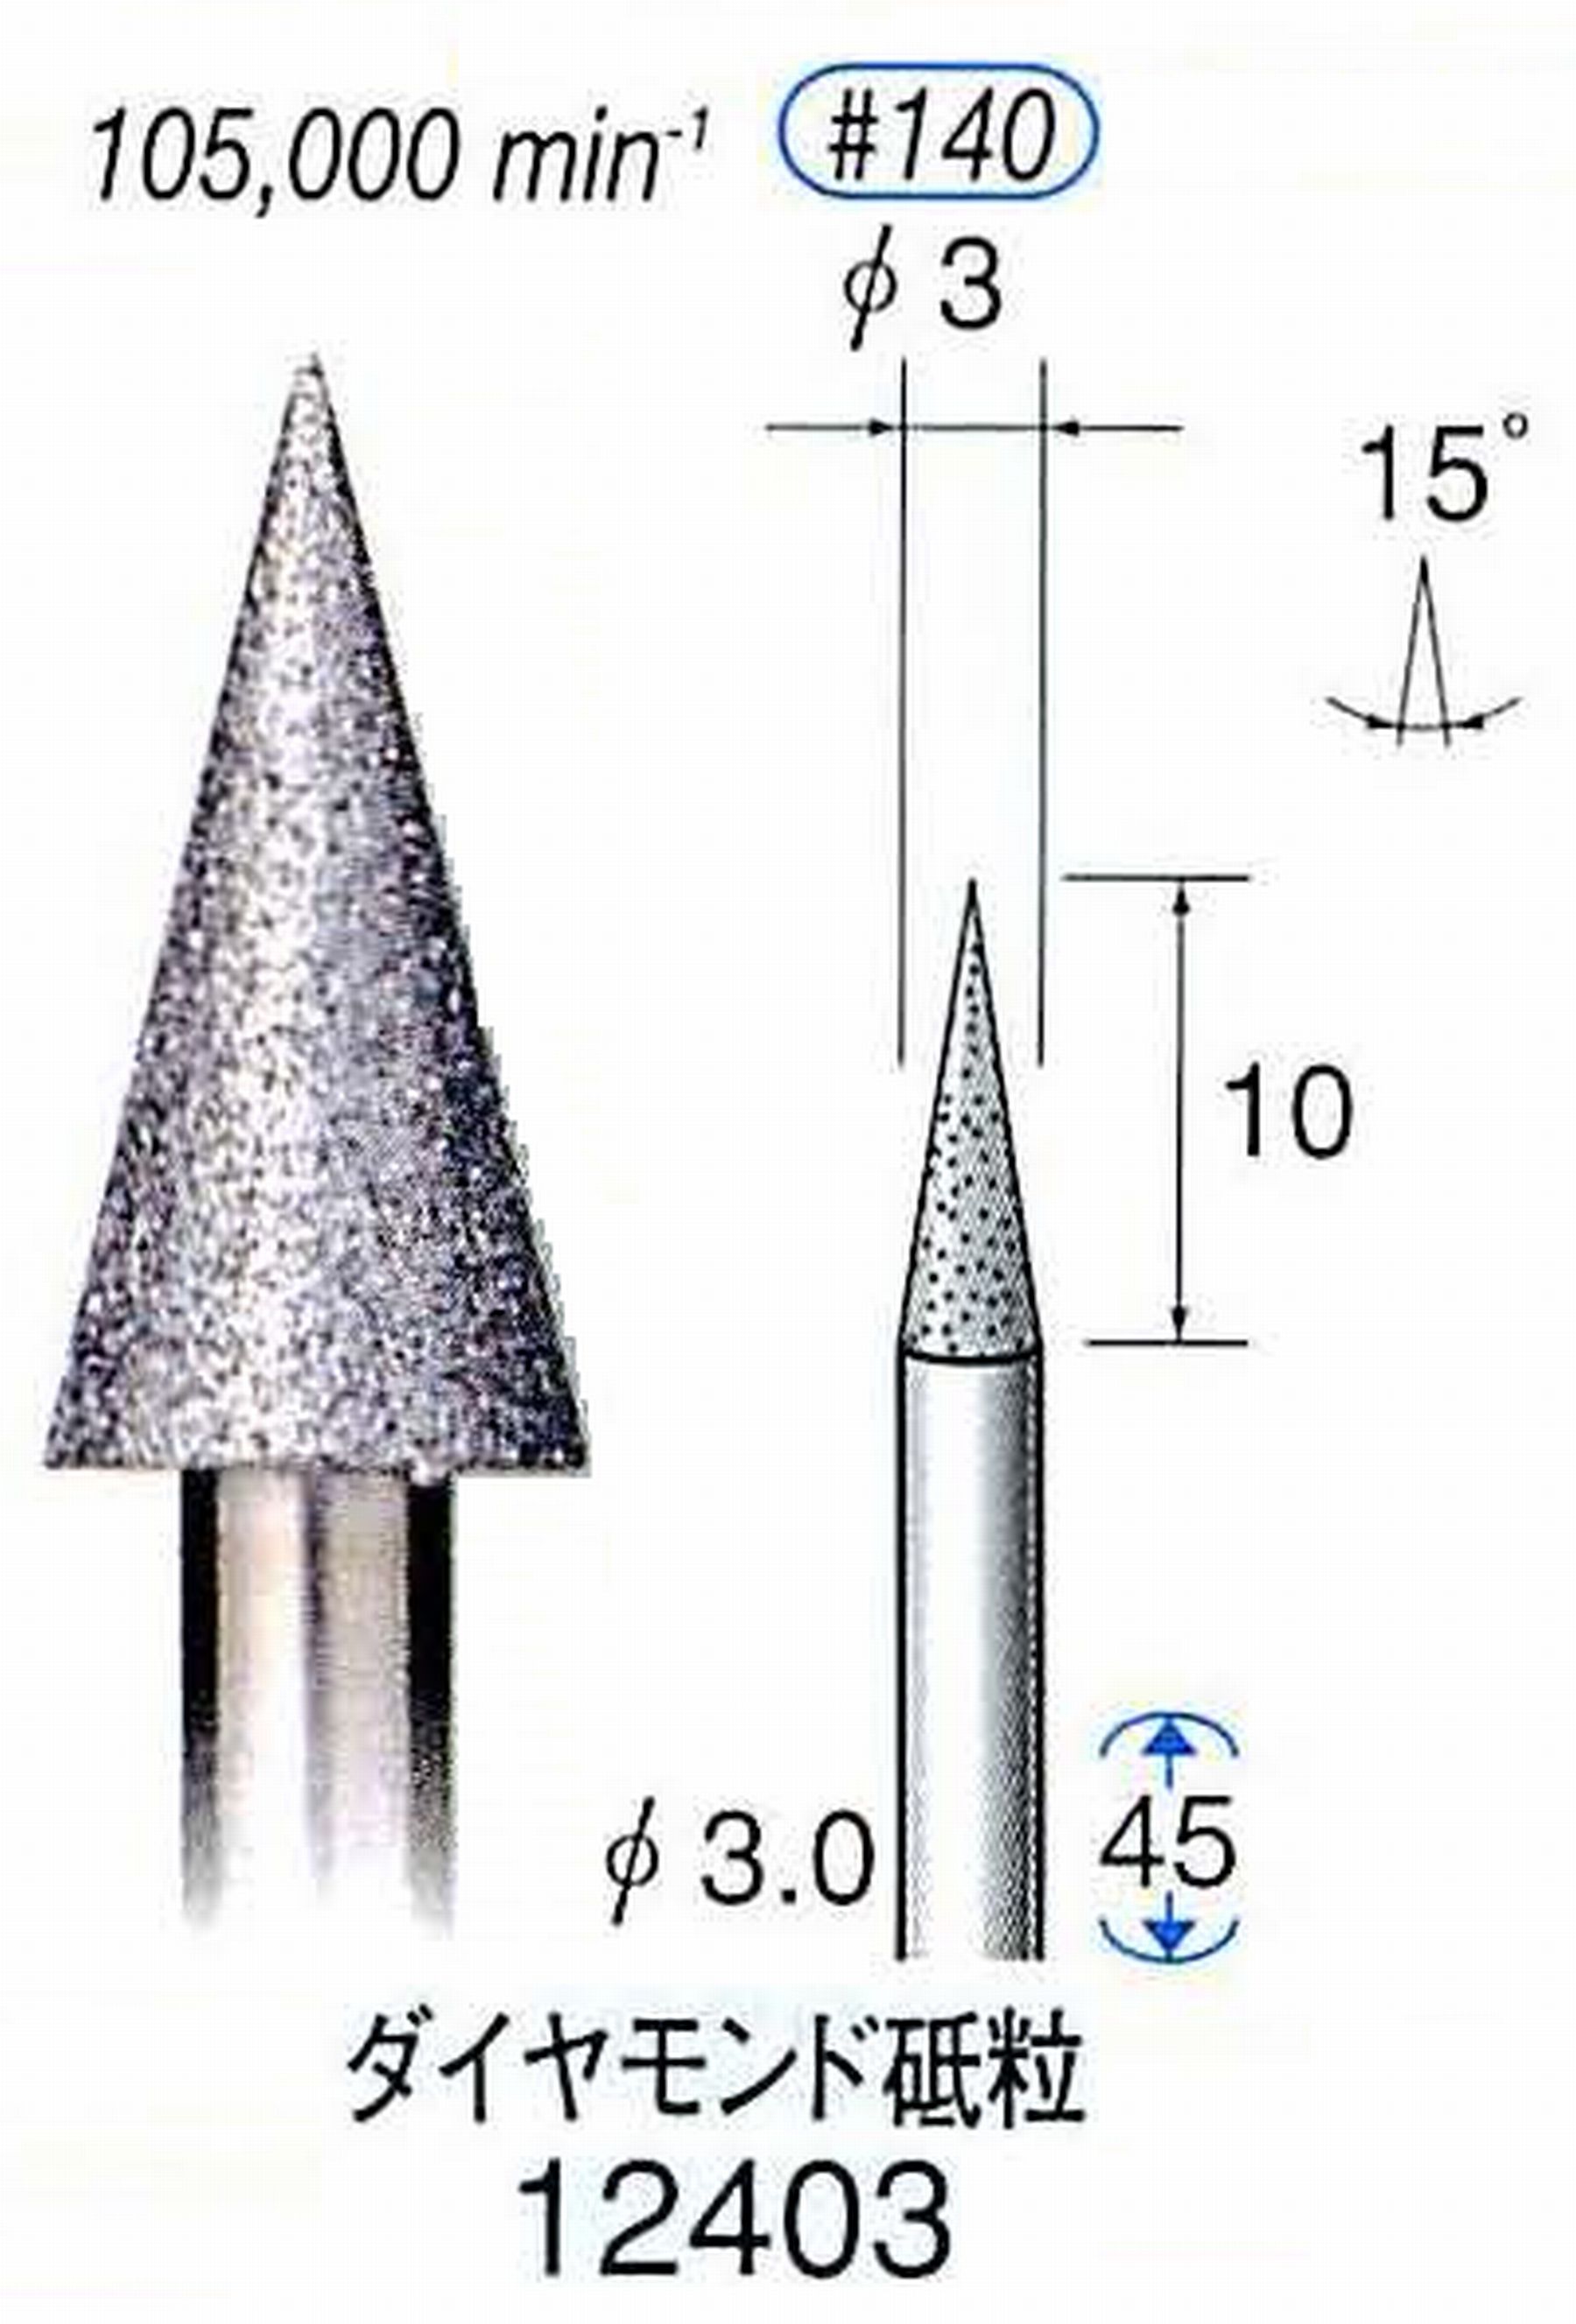 ナカニシ/NAKANISHI 電着ダイヤモンド ダイヤモンド砥粒 軸径(シャンク)φ3.0mm 12403